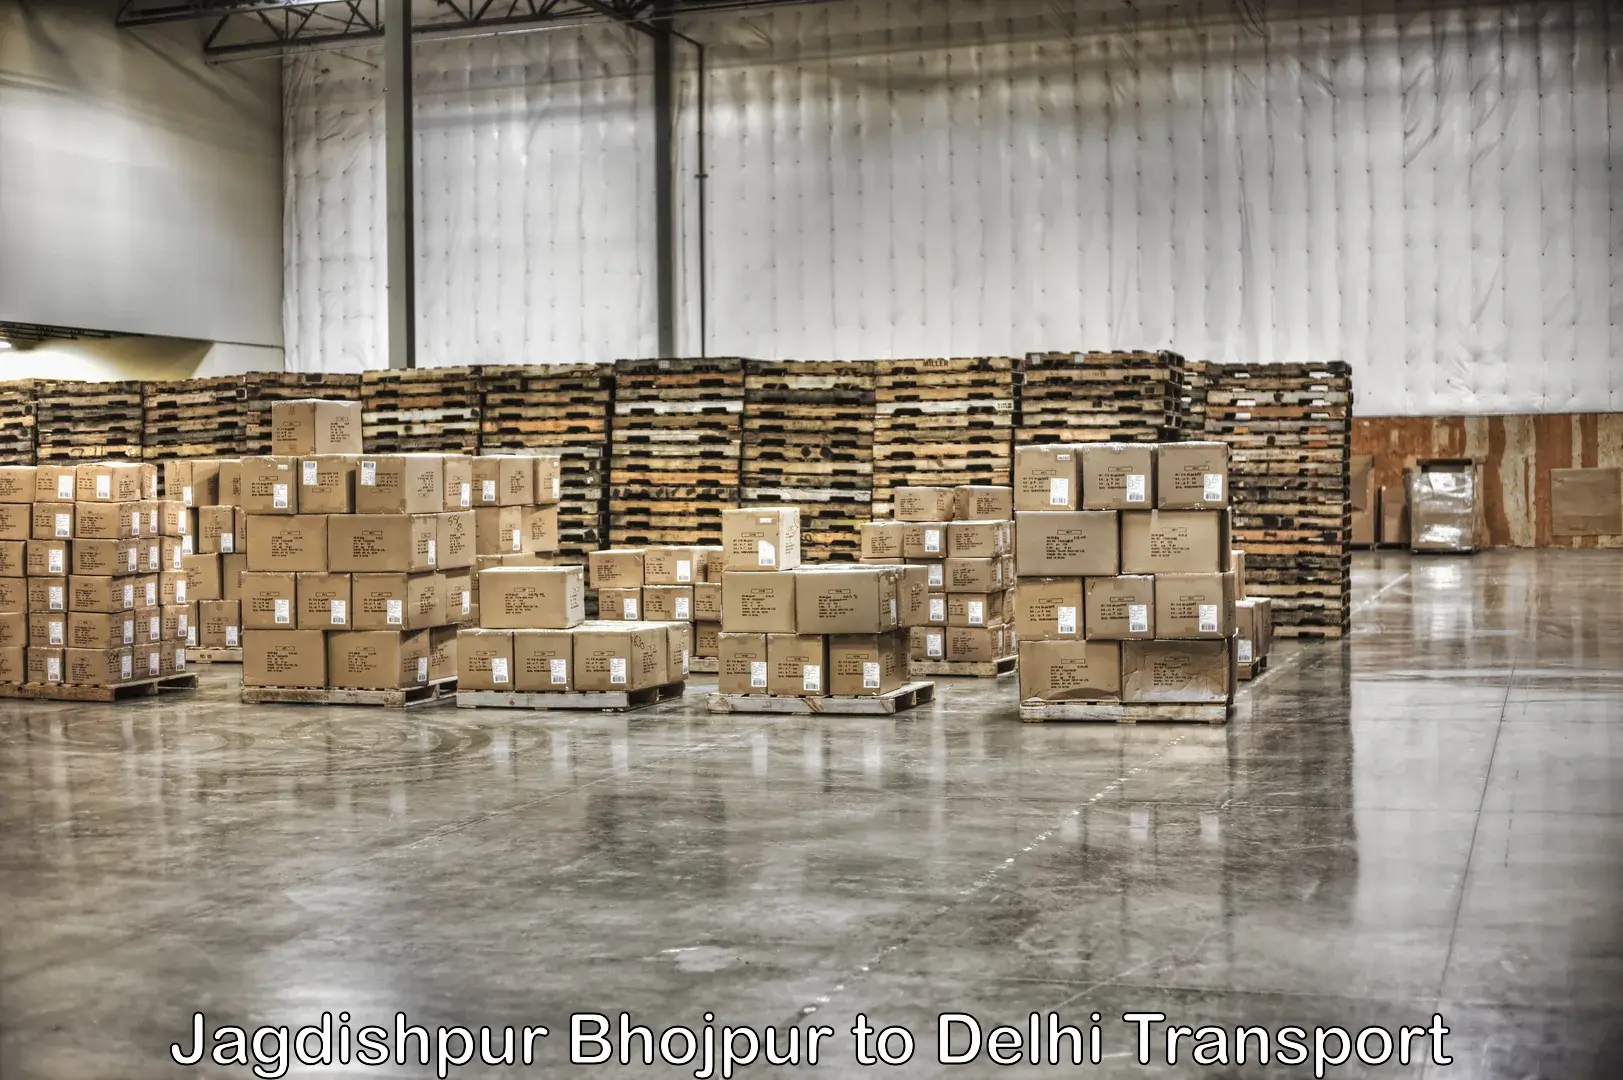 India truck logistics services Jagdishpur Bhojpur to Jawaharlal Nehru University New Delhi